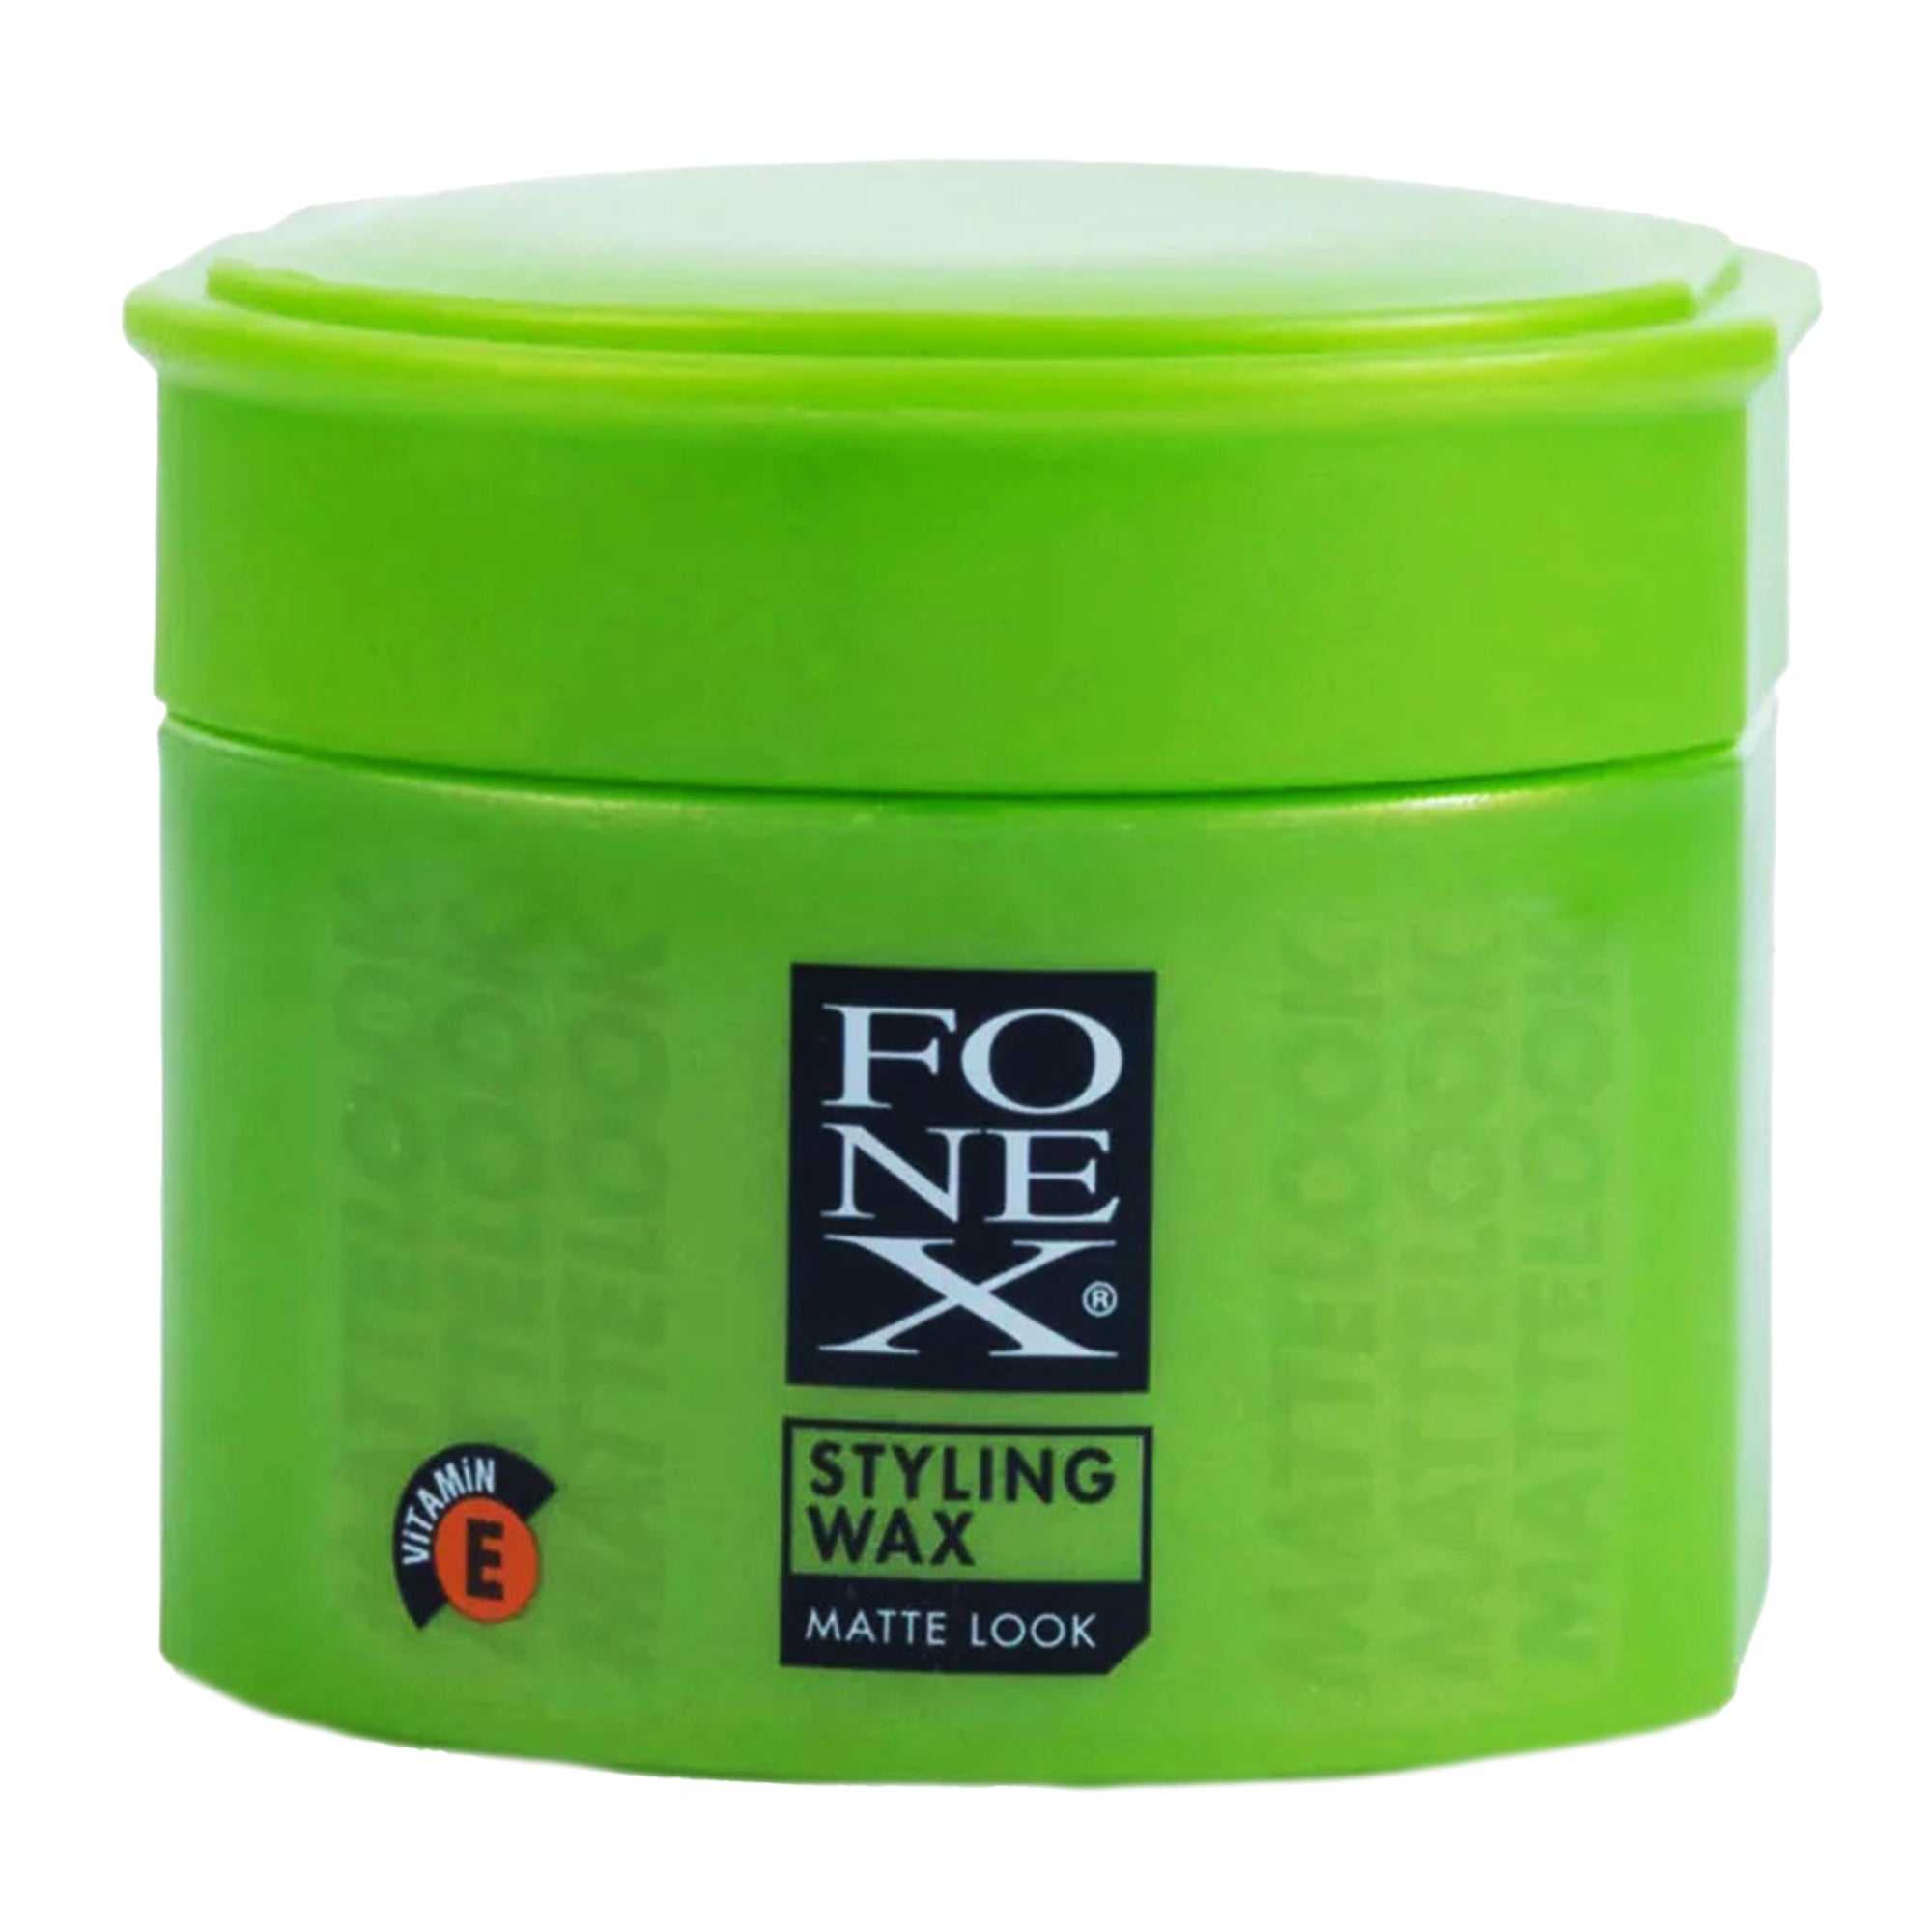 Fonex - Hair Styling Wax Matte Look 100ml